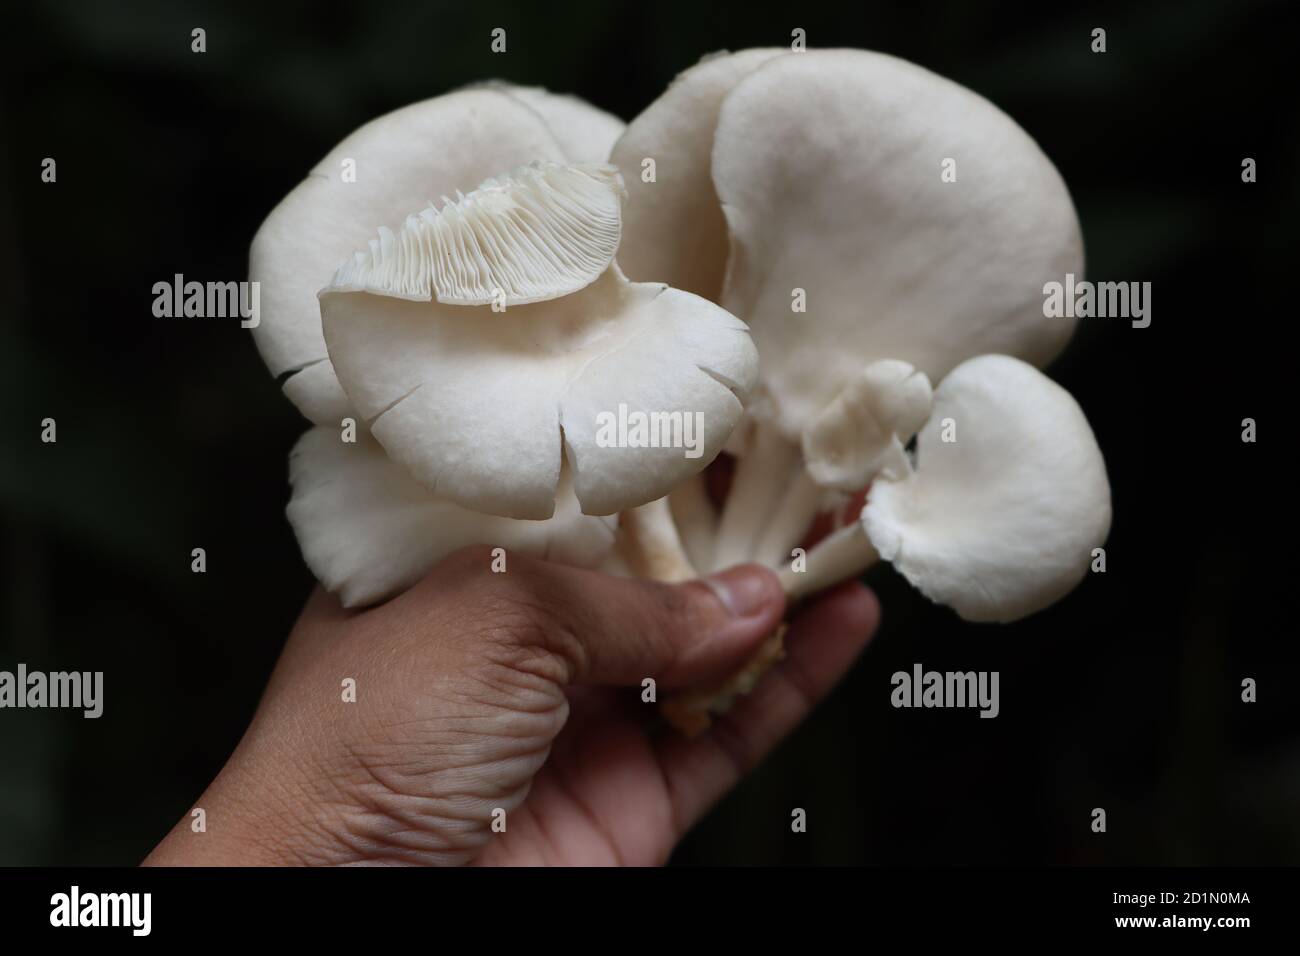 Oyster mushroom or Pleurotus mushroom in hand Stock Photo